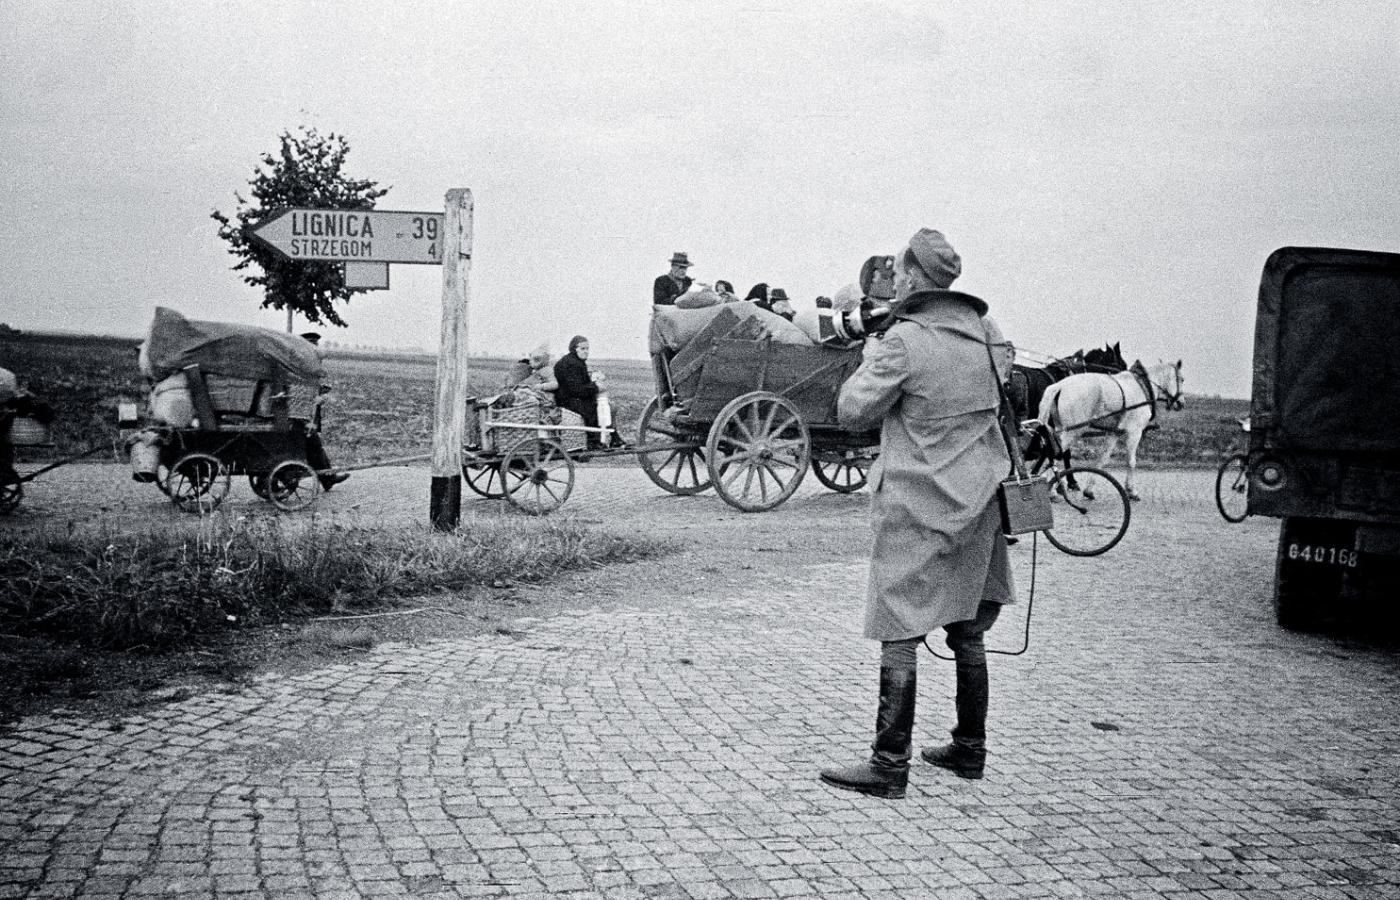 Niemcy wysiedlani z Polski, Dolny Śląsk, marzec 1946 r.